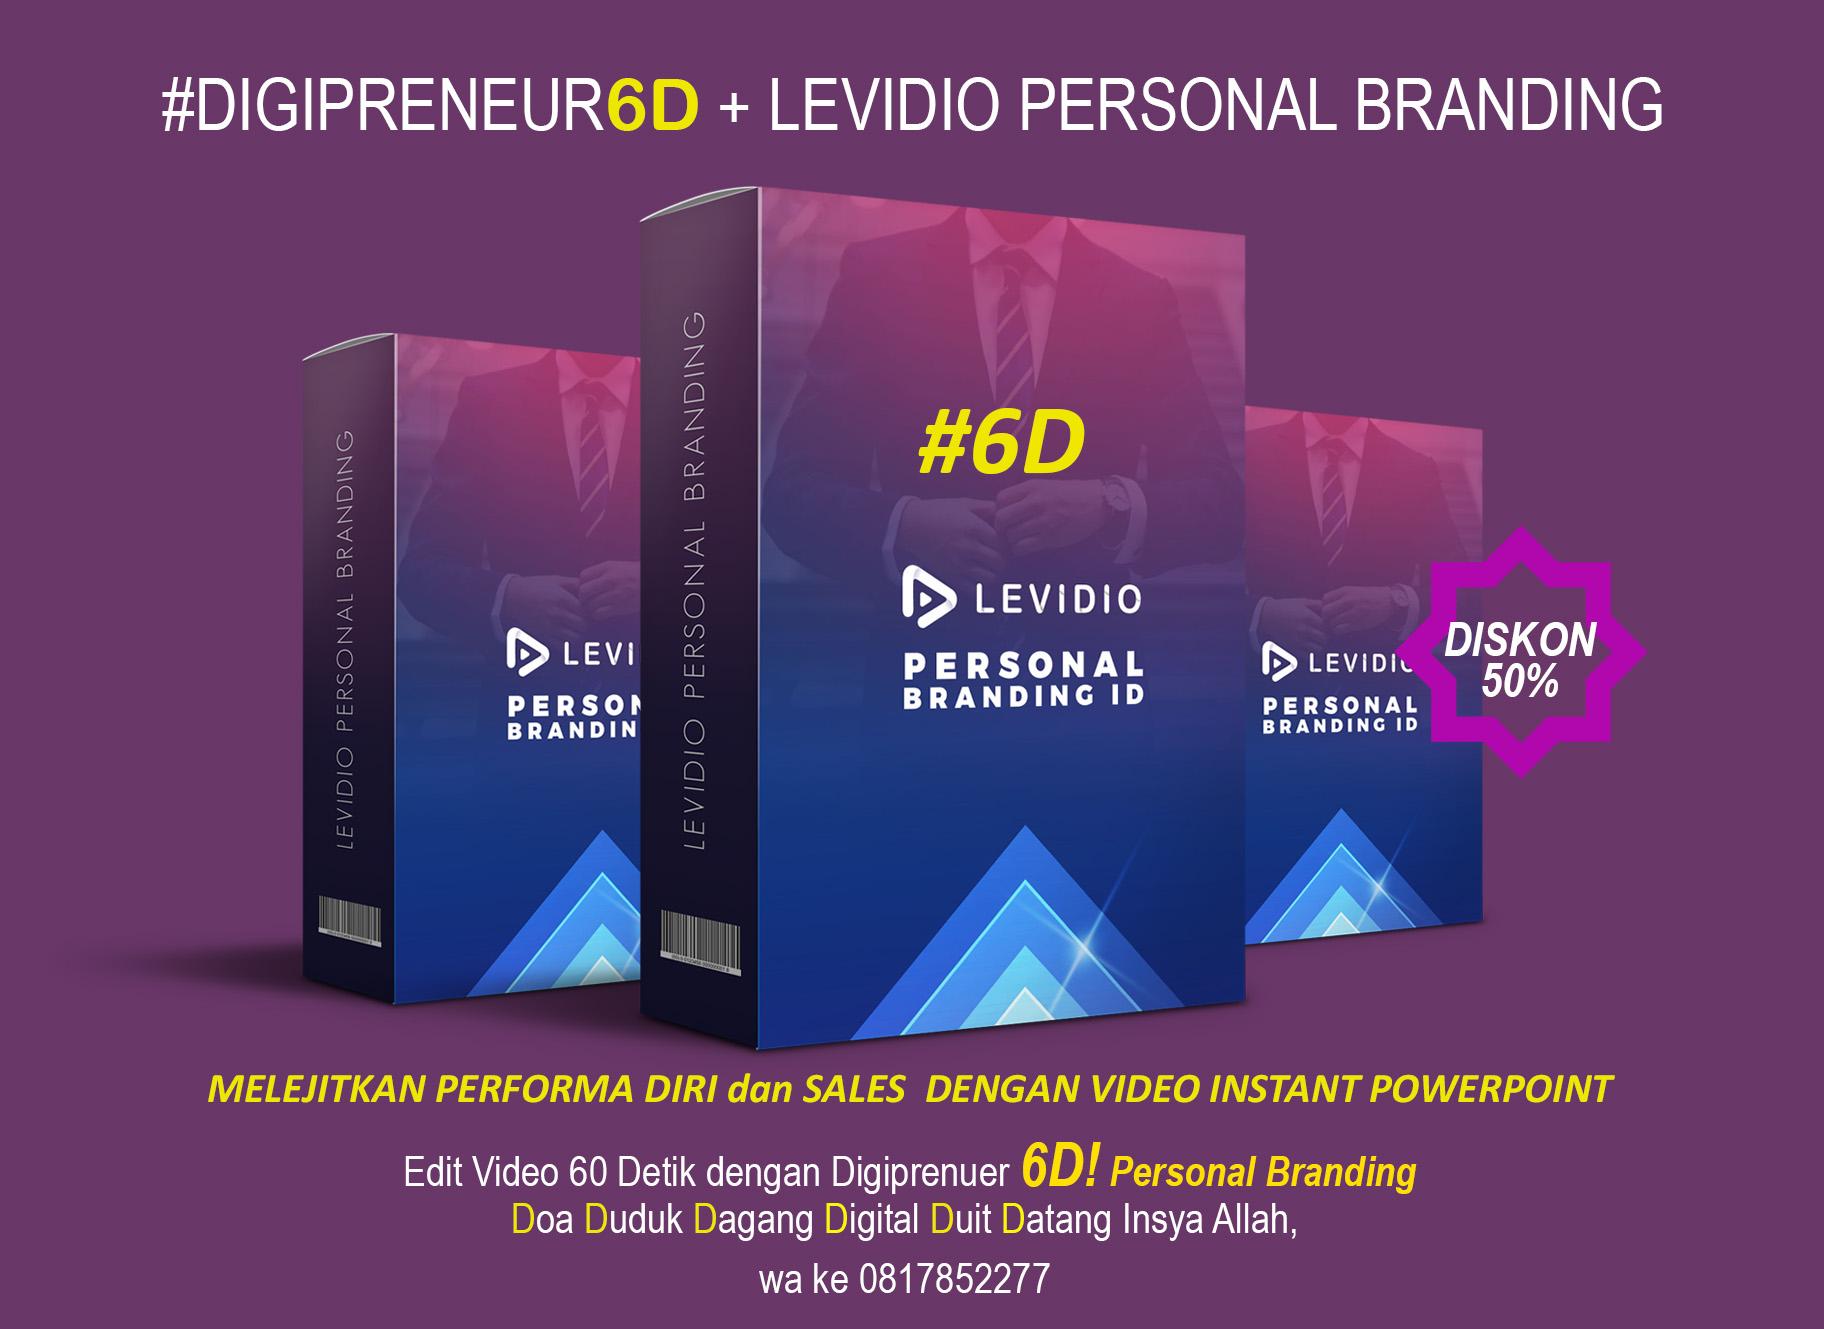 SUPER VIDEO dibuat hanya 60 Detik dengan Levidio Personal Branding dari #Digipreneur6D, Diskon 50%!